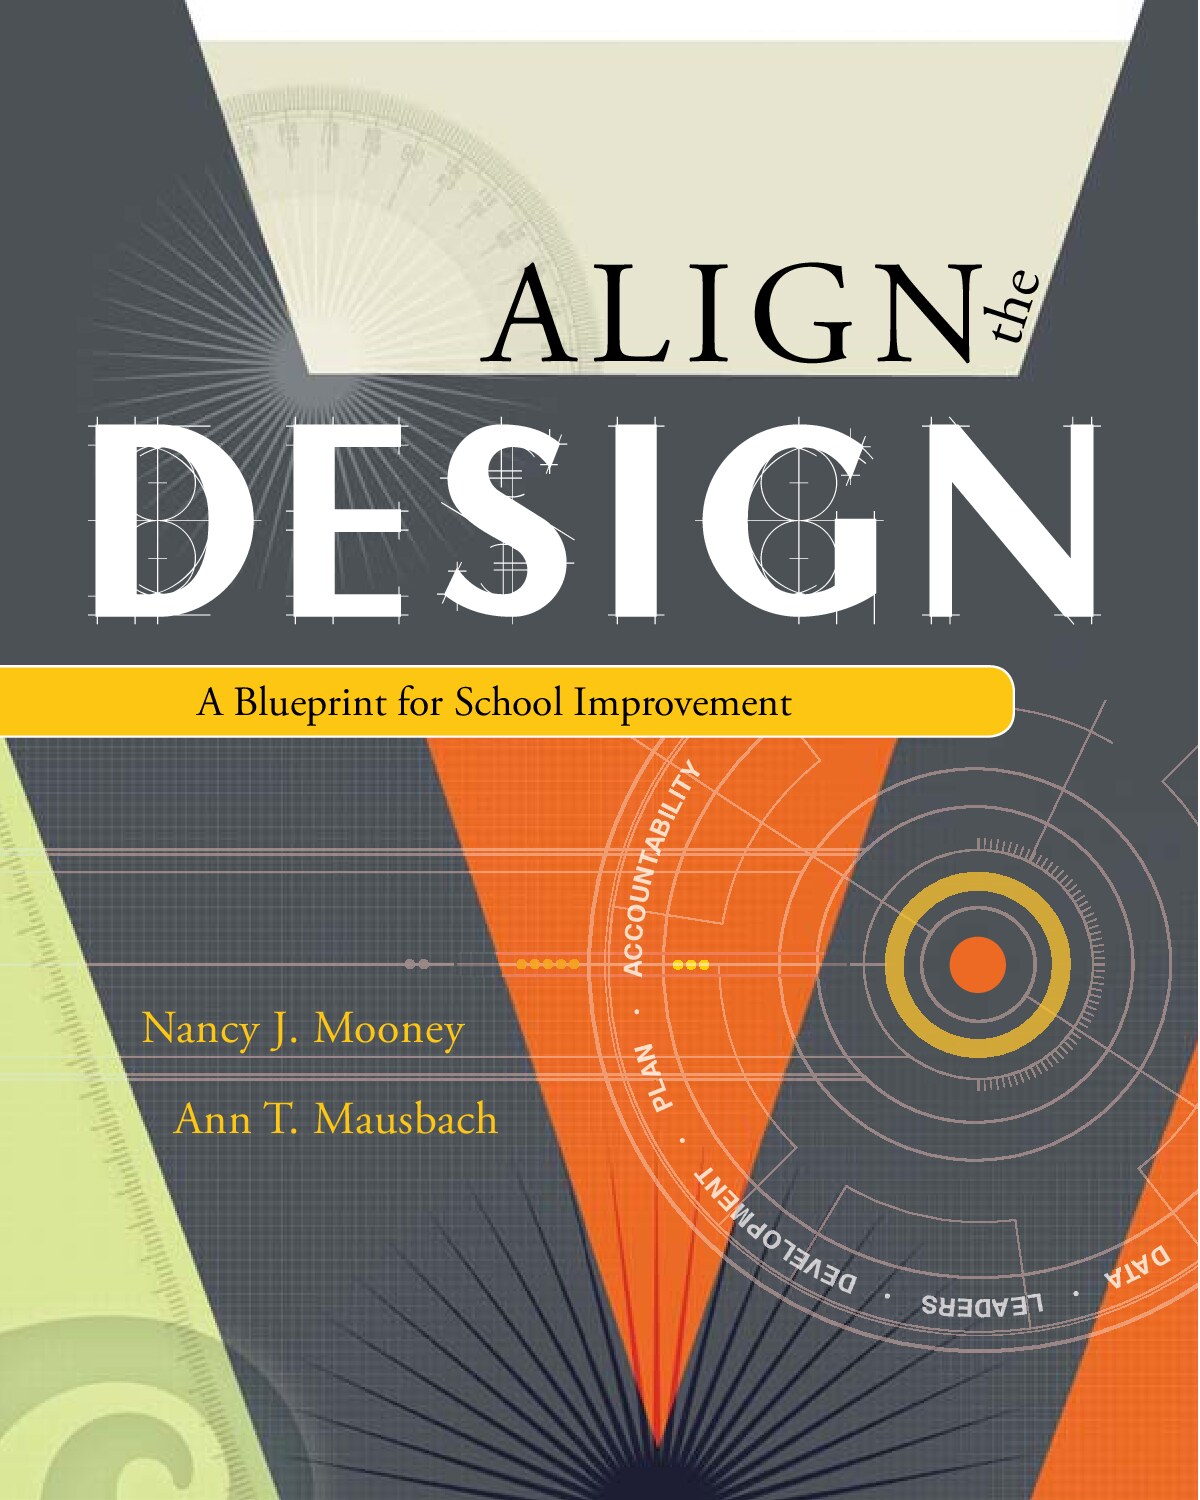 Nancy J. Mooney, Ann T. Mausbach - Align The Design_ A Blueprint for School Improvement (2008)